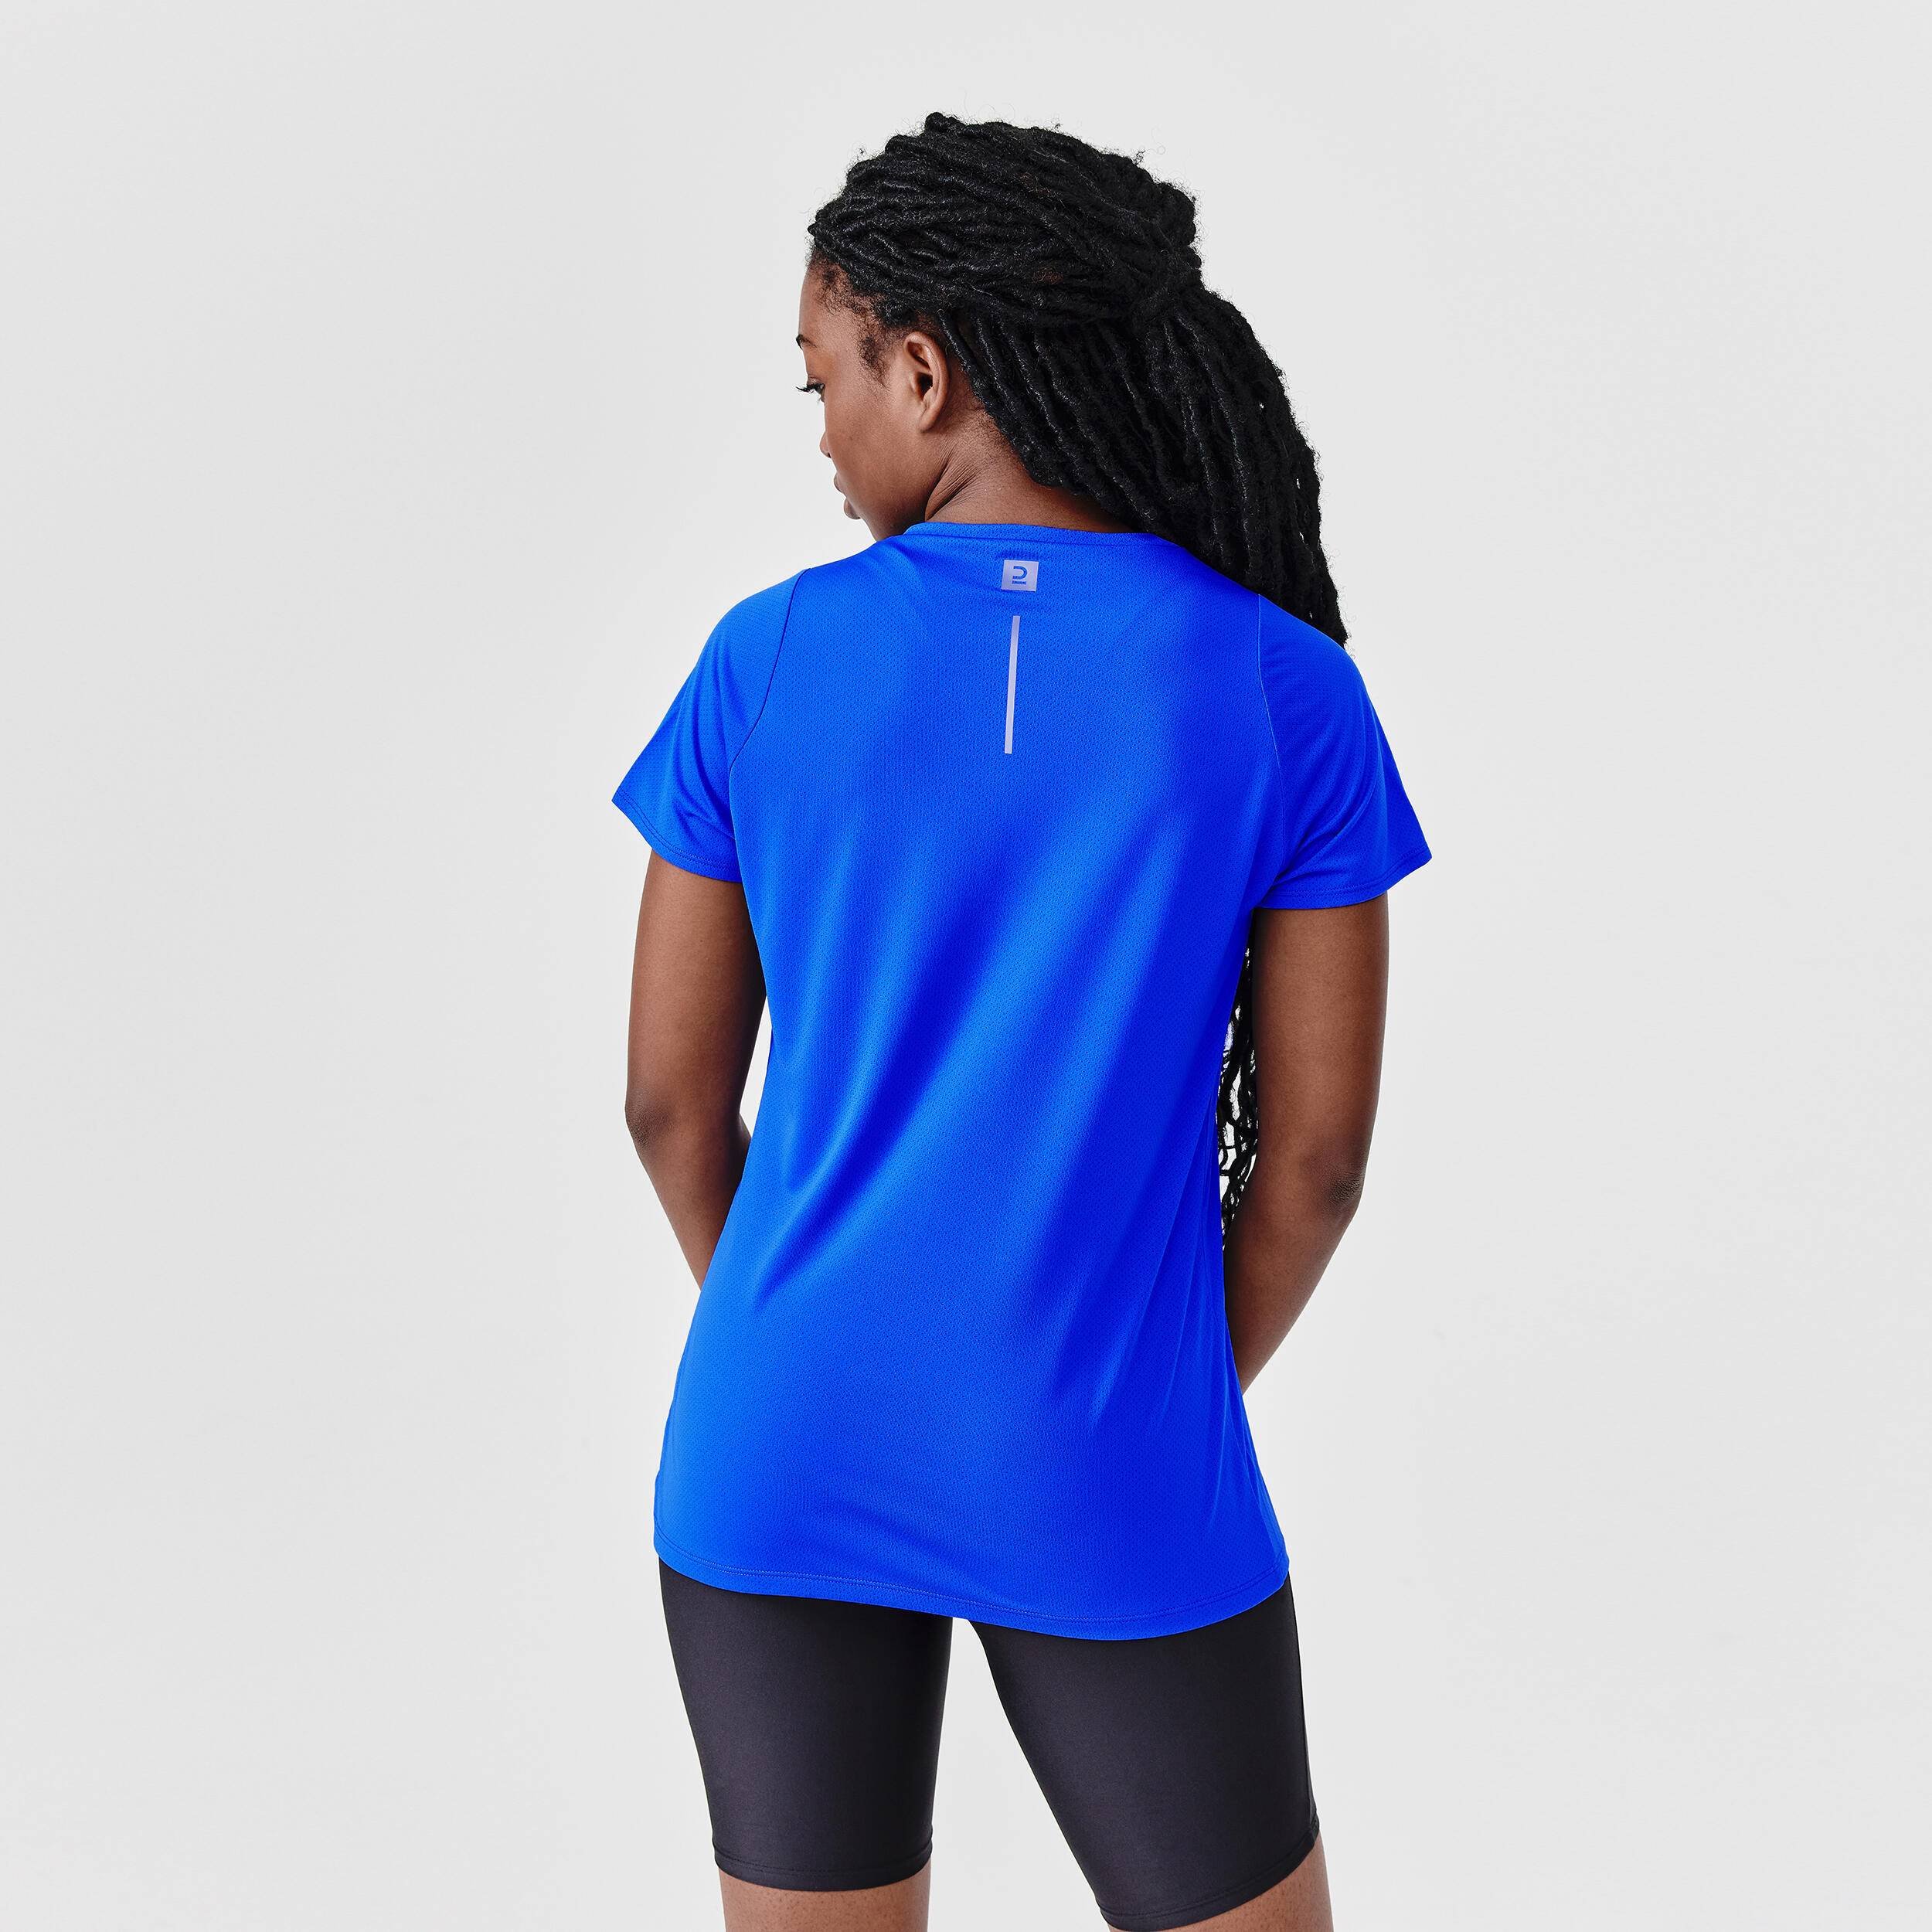 Women's short-sleeved breathable running T-shirt Dry - blue 2/7